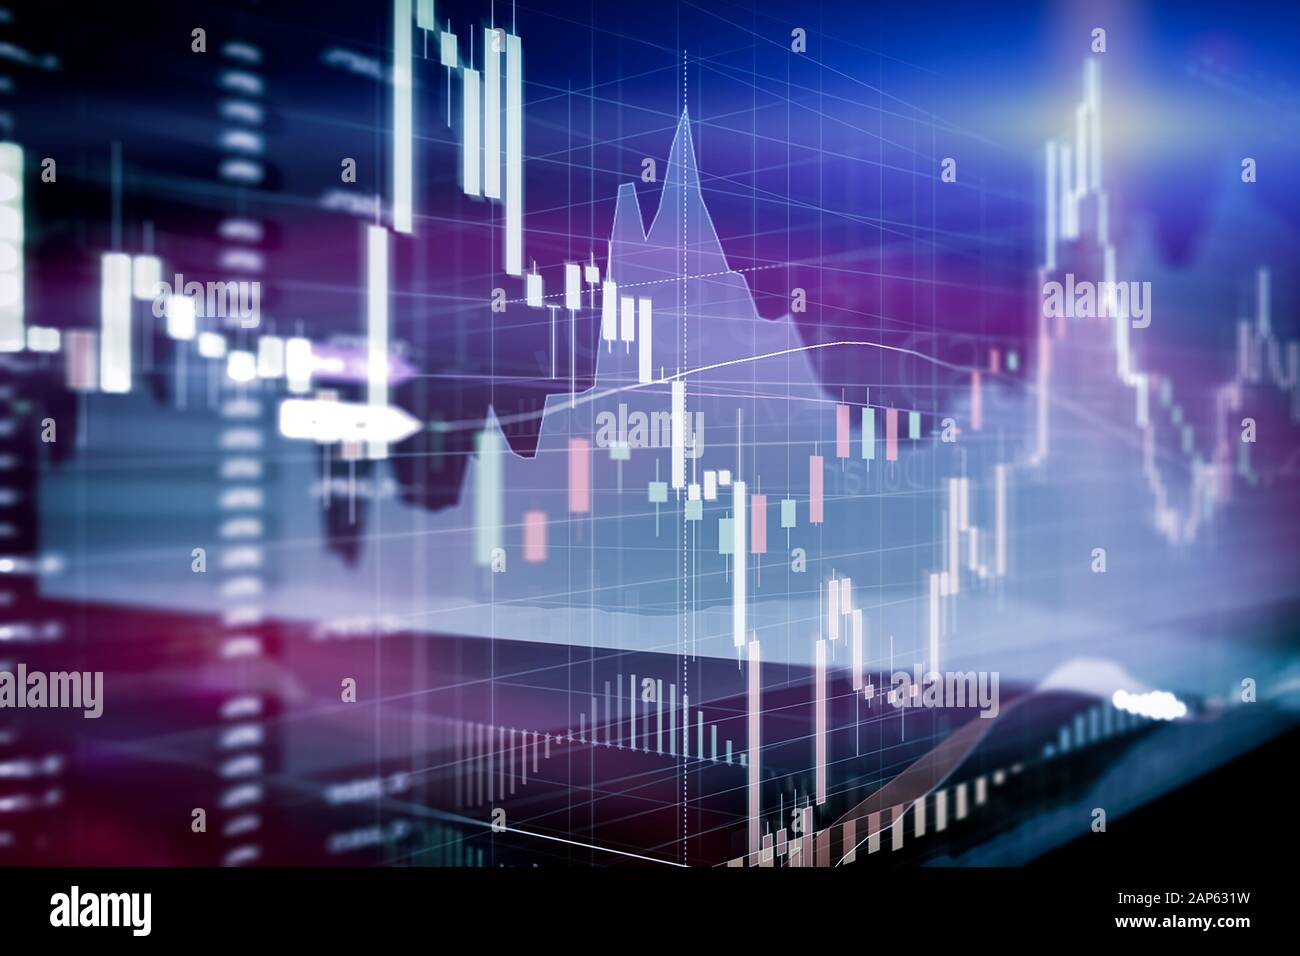 Candle stick graphique et diagramme à barres en bourse, investissement trading. Forex analyse : l'affichage sur écran d'ordinateur. Banque D'Images